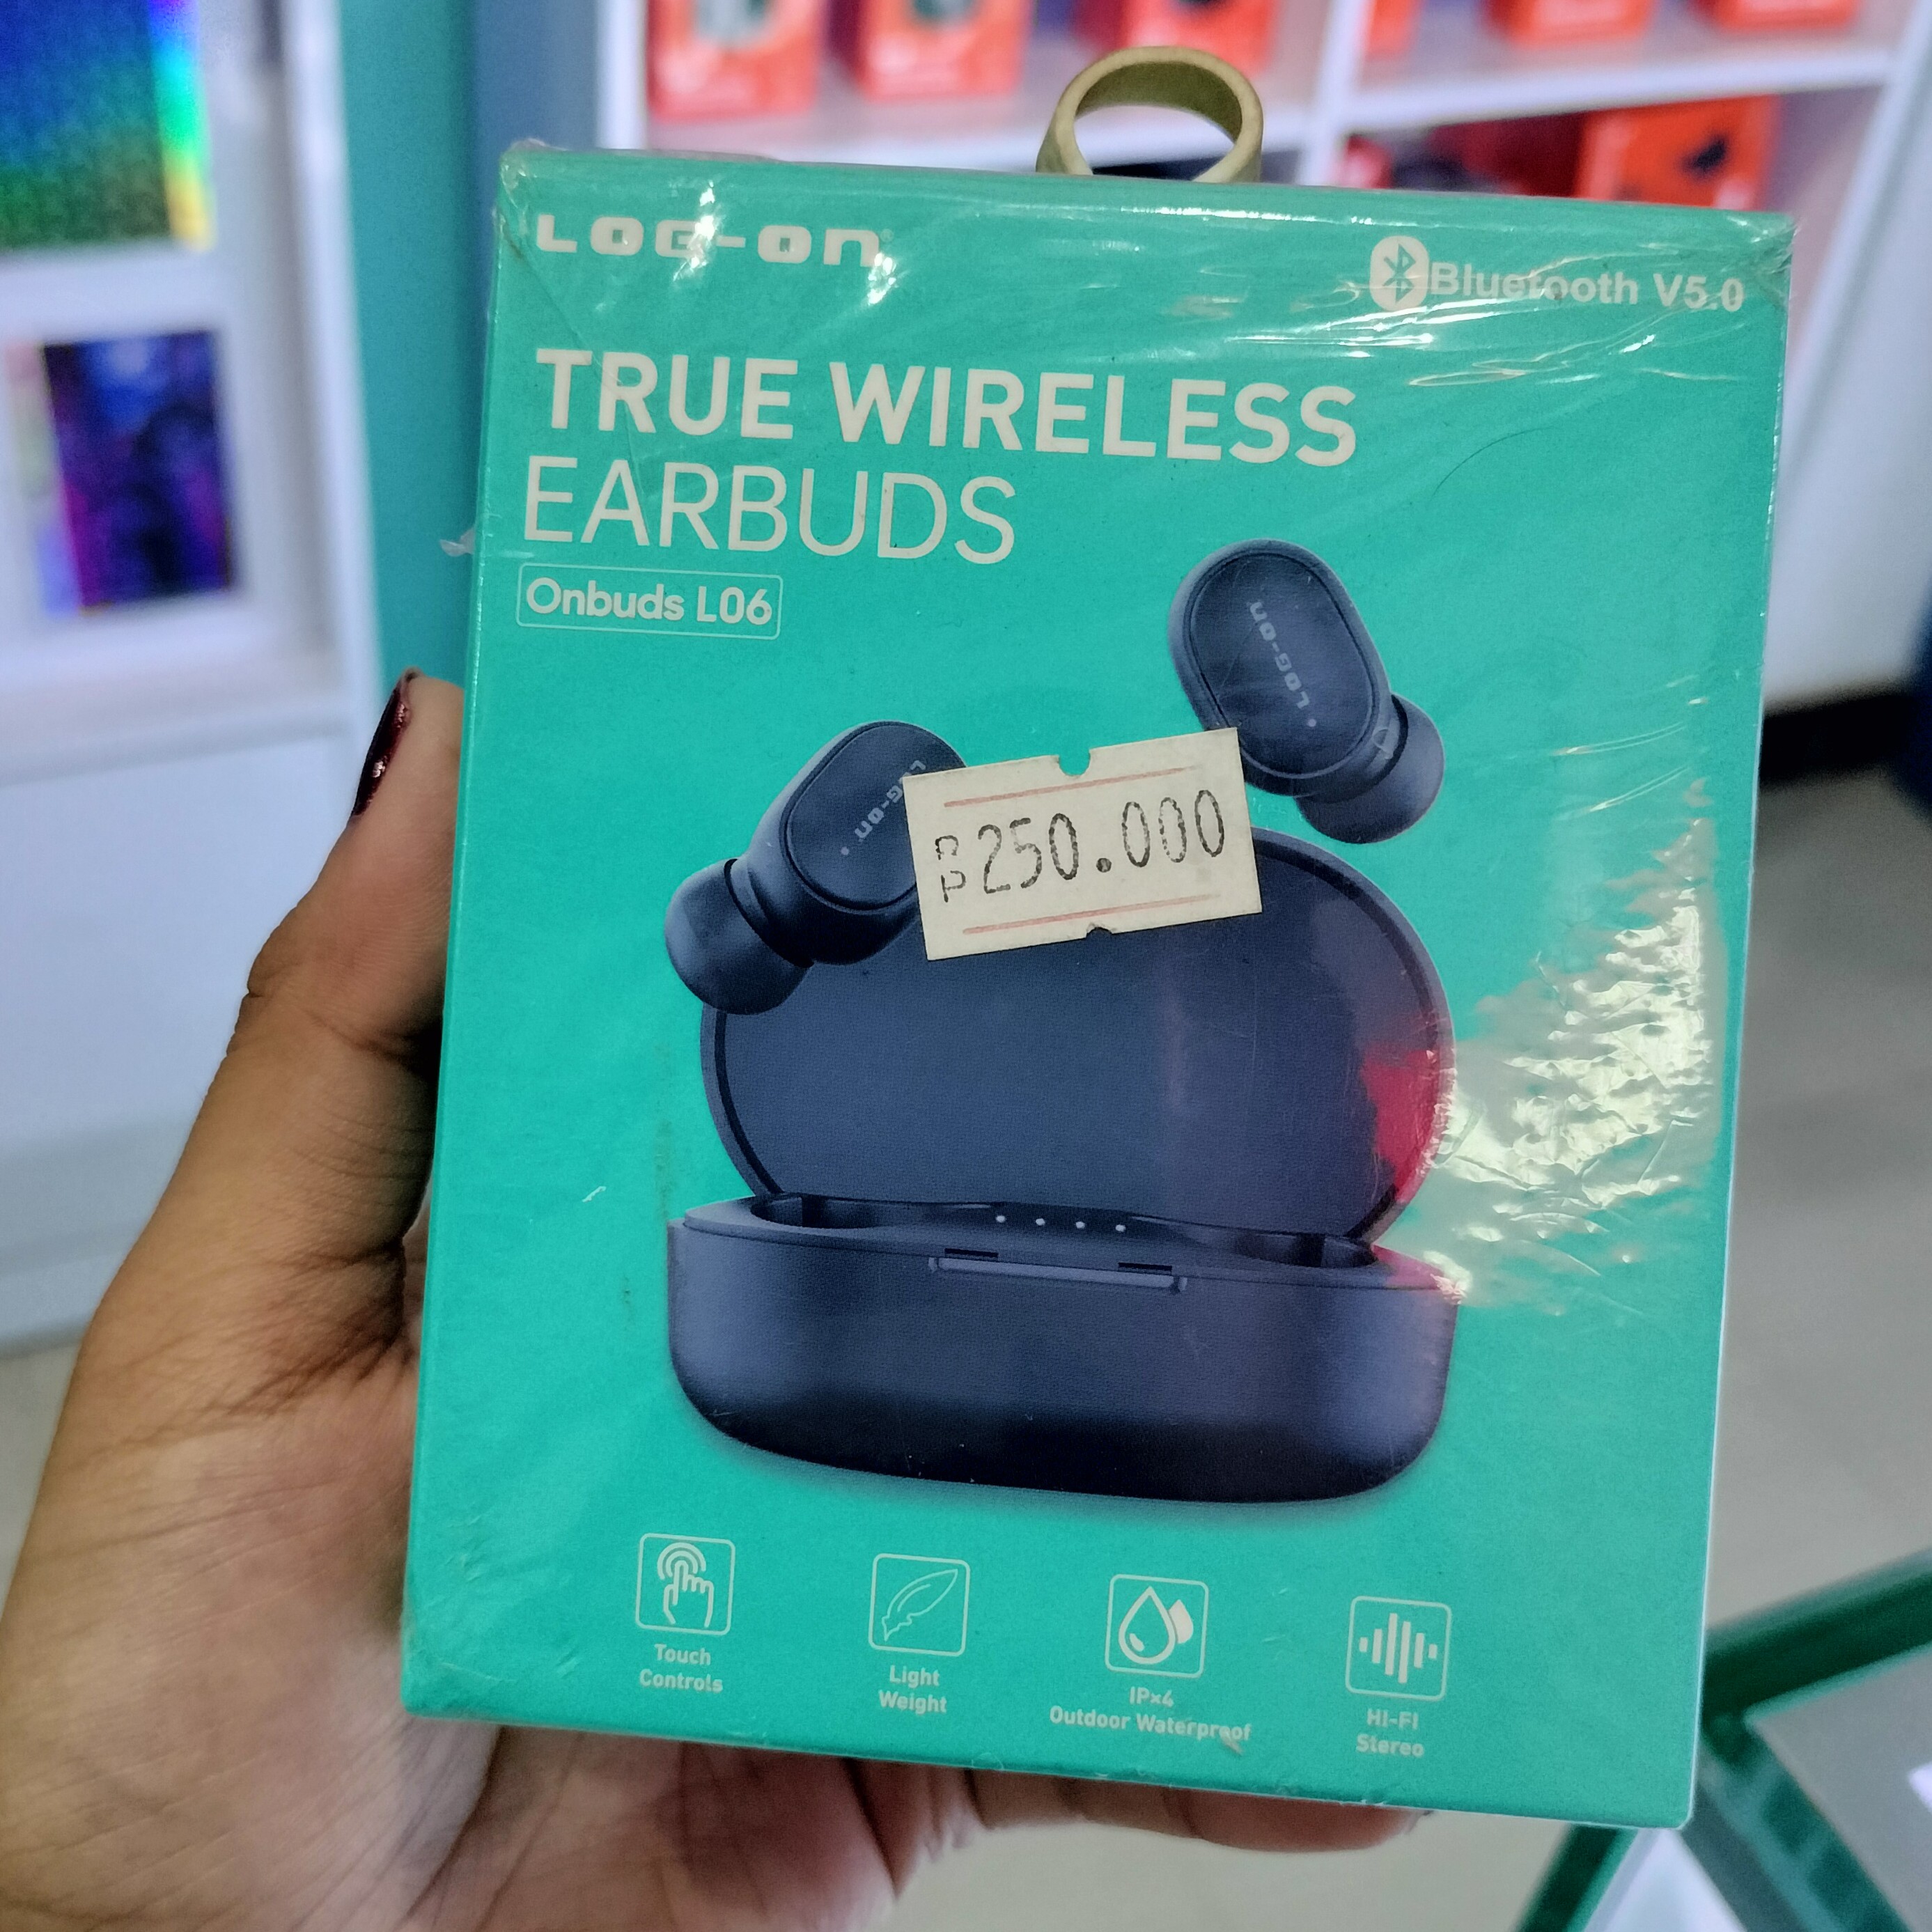 LOG-ON True Wireless Ear Buds L06